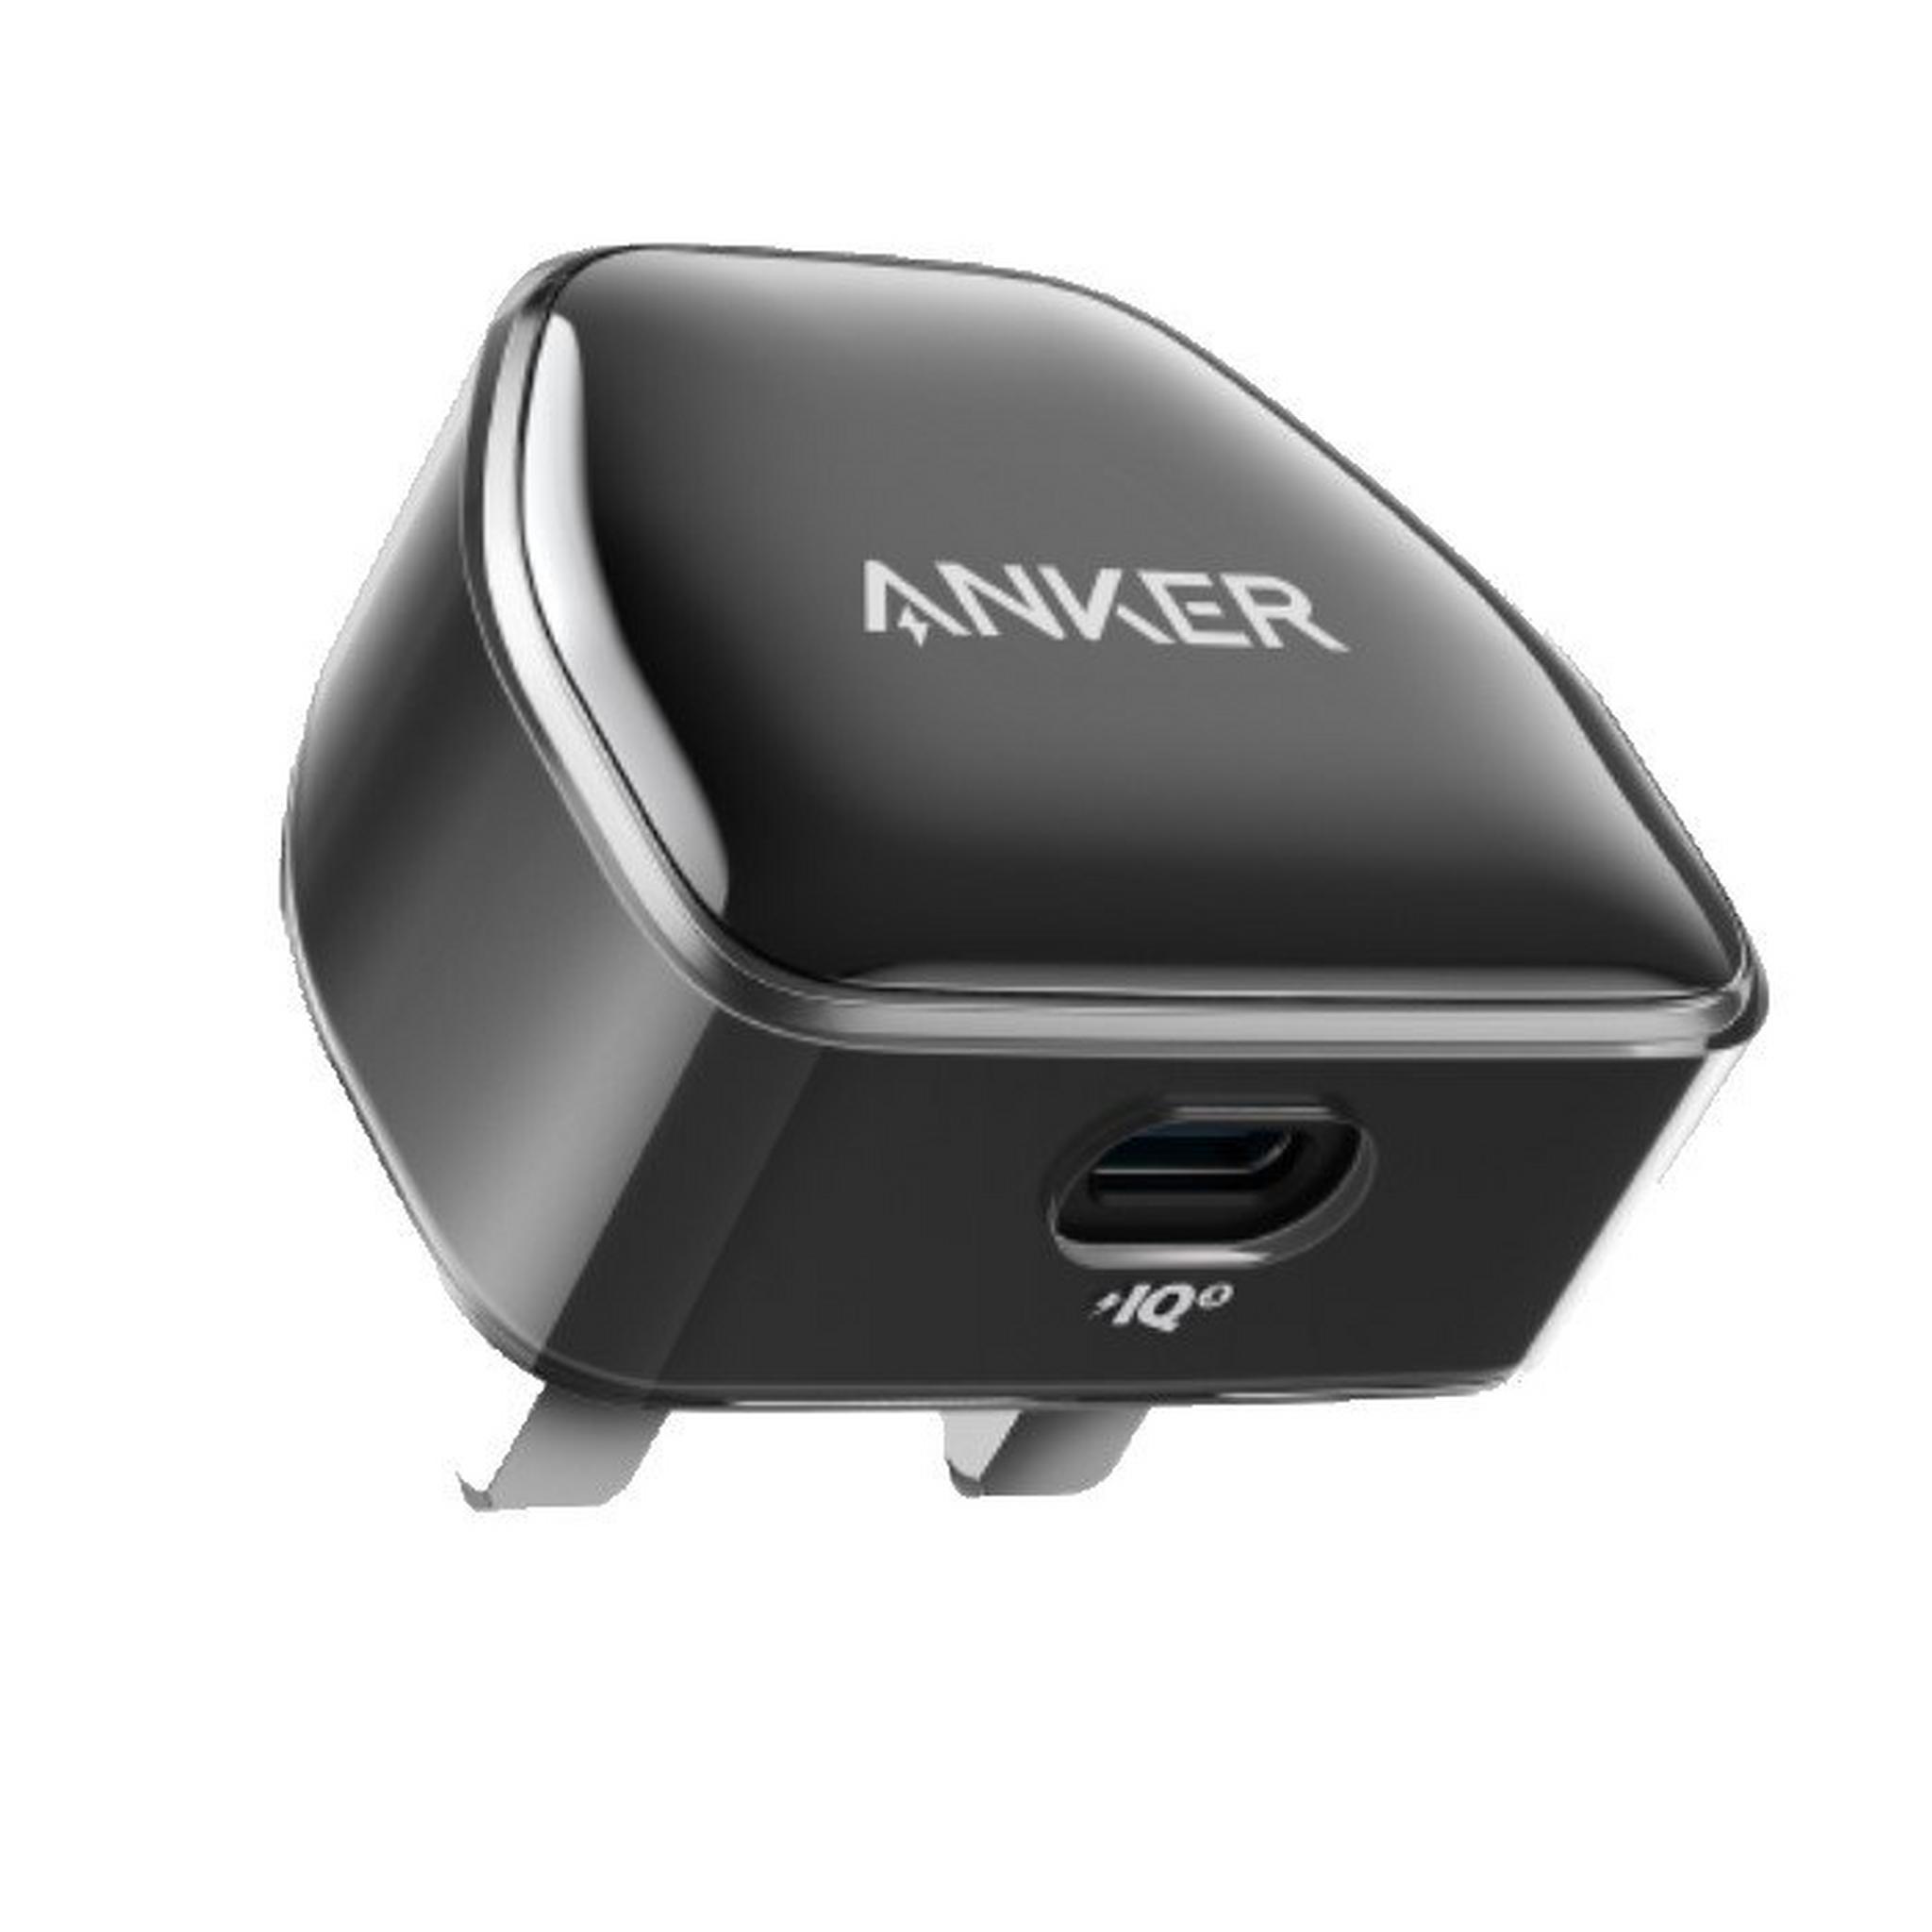 Anker 511 Charger (Nano Pro), 20W, A2637K12 – Black